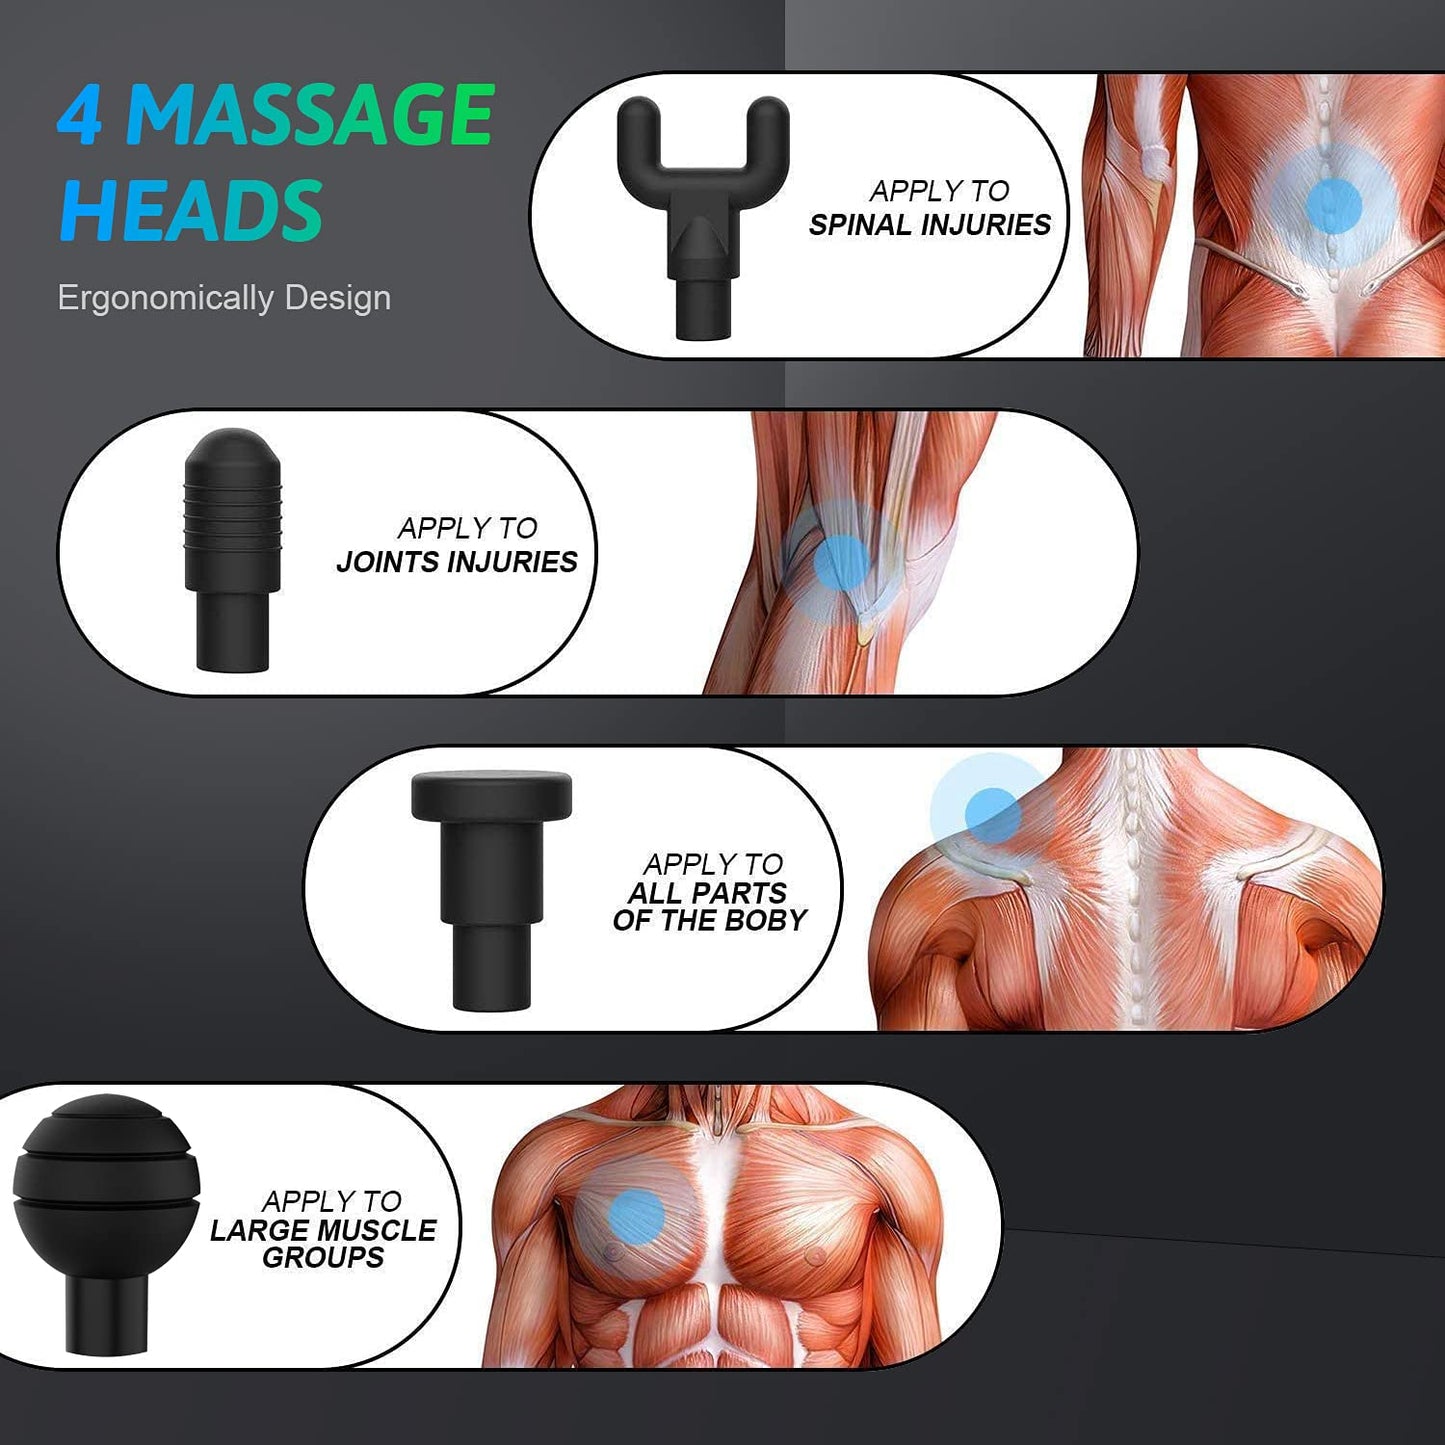 Cotsoco 6 Speeds Massage Gun, Cordless Handheld Deep Tissue Muscle Massager (Silver)